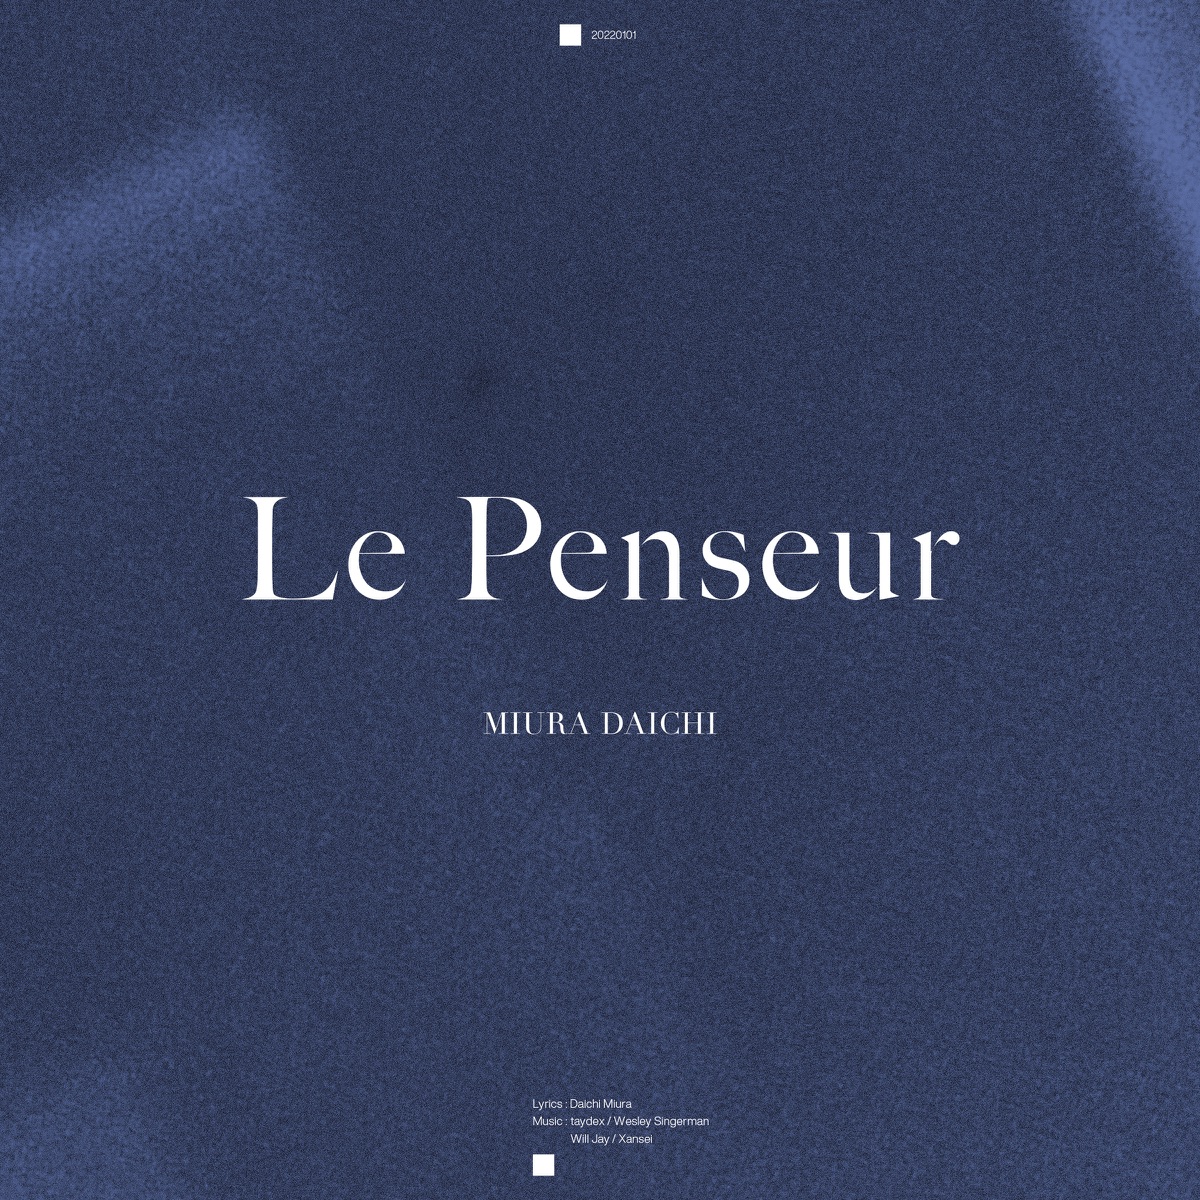 Cover for『Daichi Miura - Le Penseur』from the release『Le Penseur』